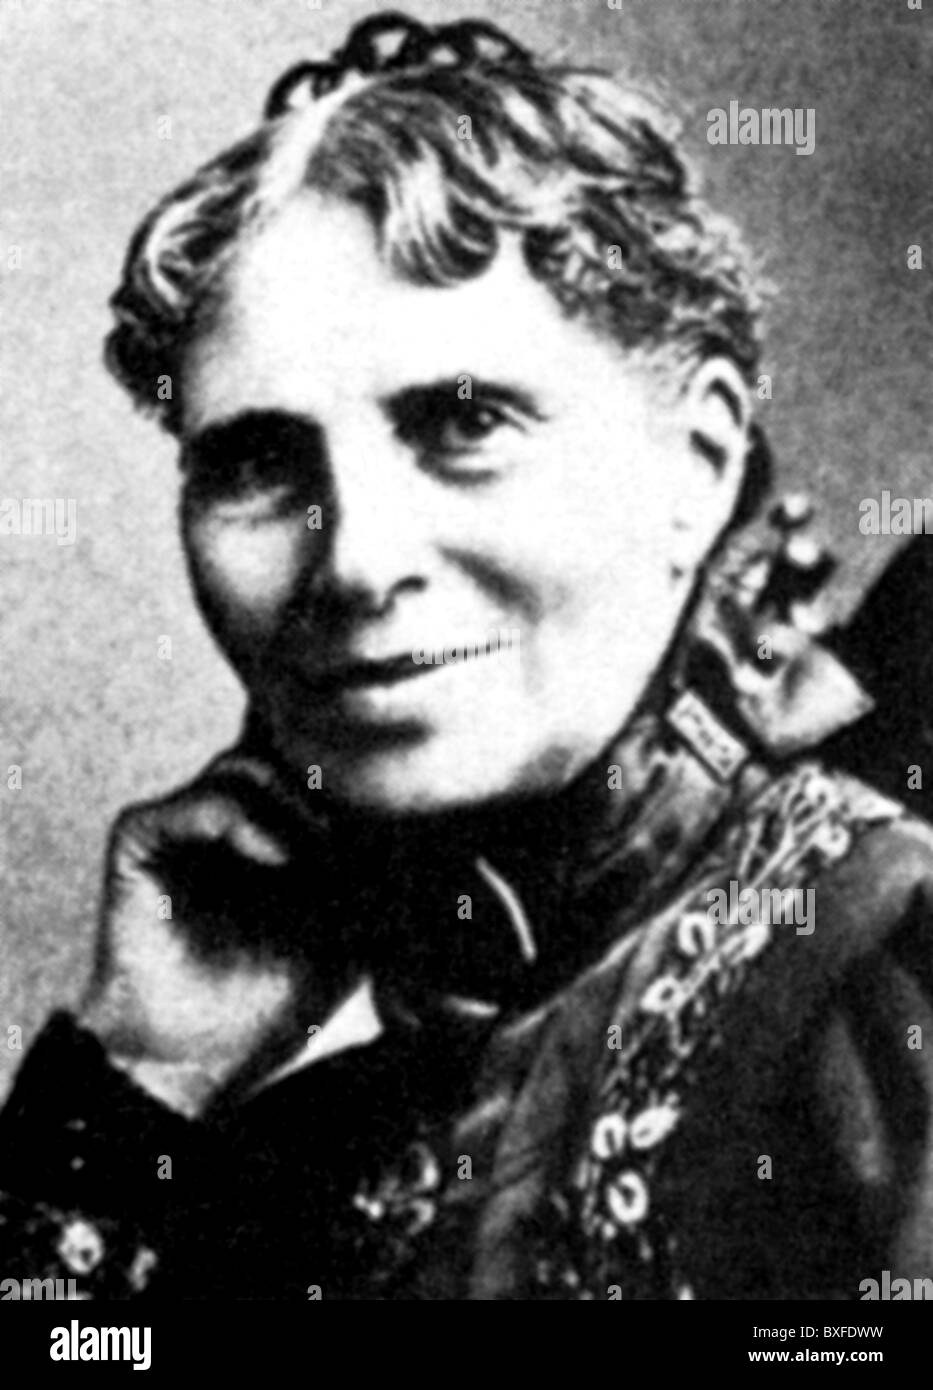 Barton, Clara Harlowe, 25.12.1821 - 12.4.1912, infirmière américaine, fondatrice de la Croix-Rouge américaine 1882, portrait, XIXe siècle, Banque D'Images